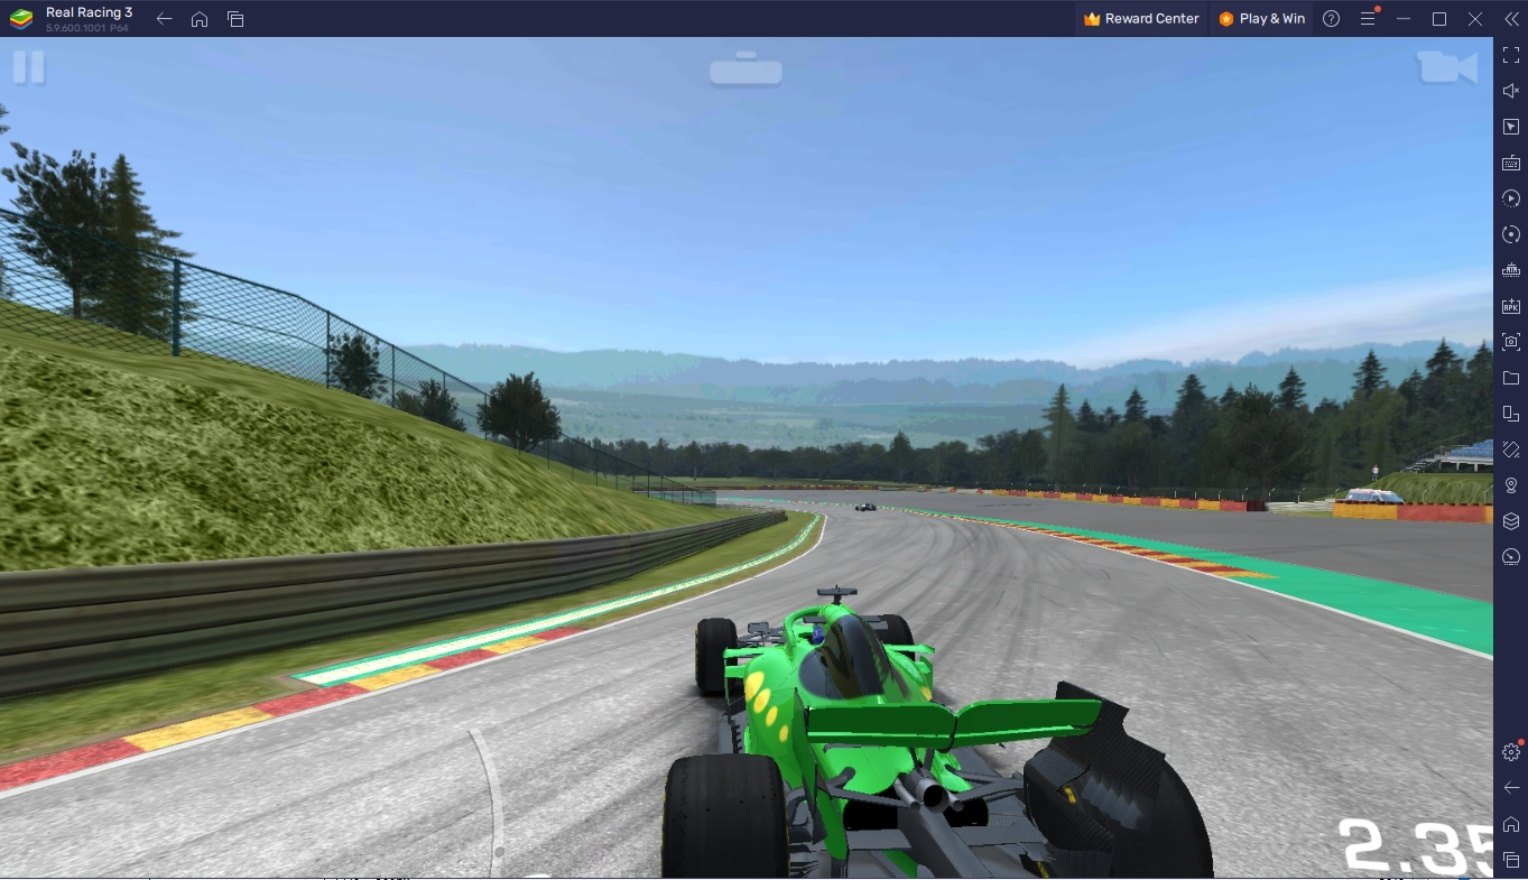 Cómo mejorar tus habilidades de conducción en Real Racing 3